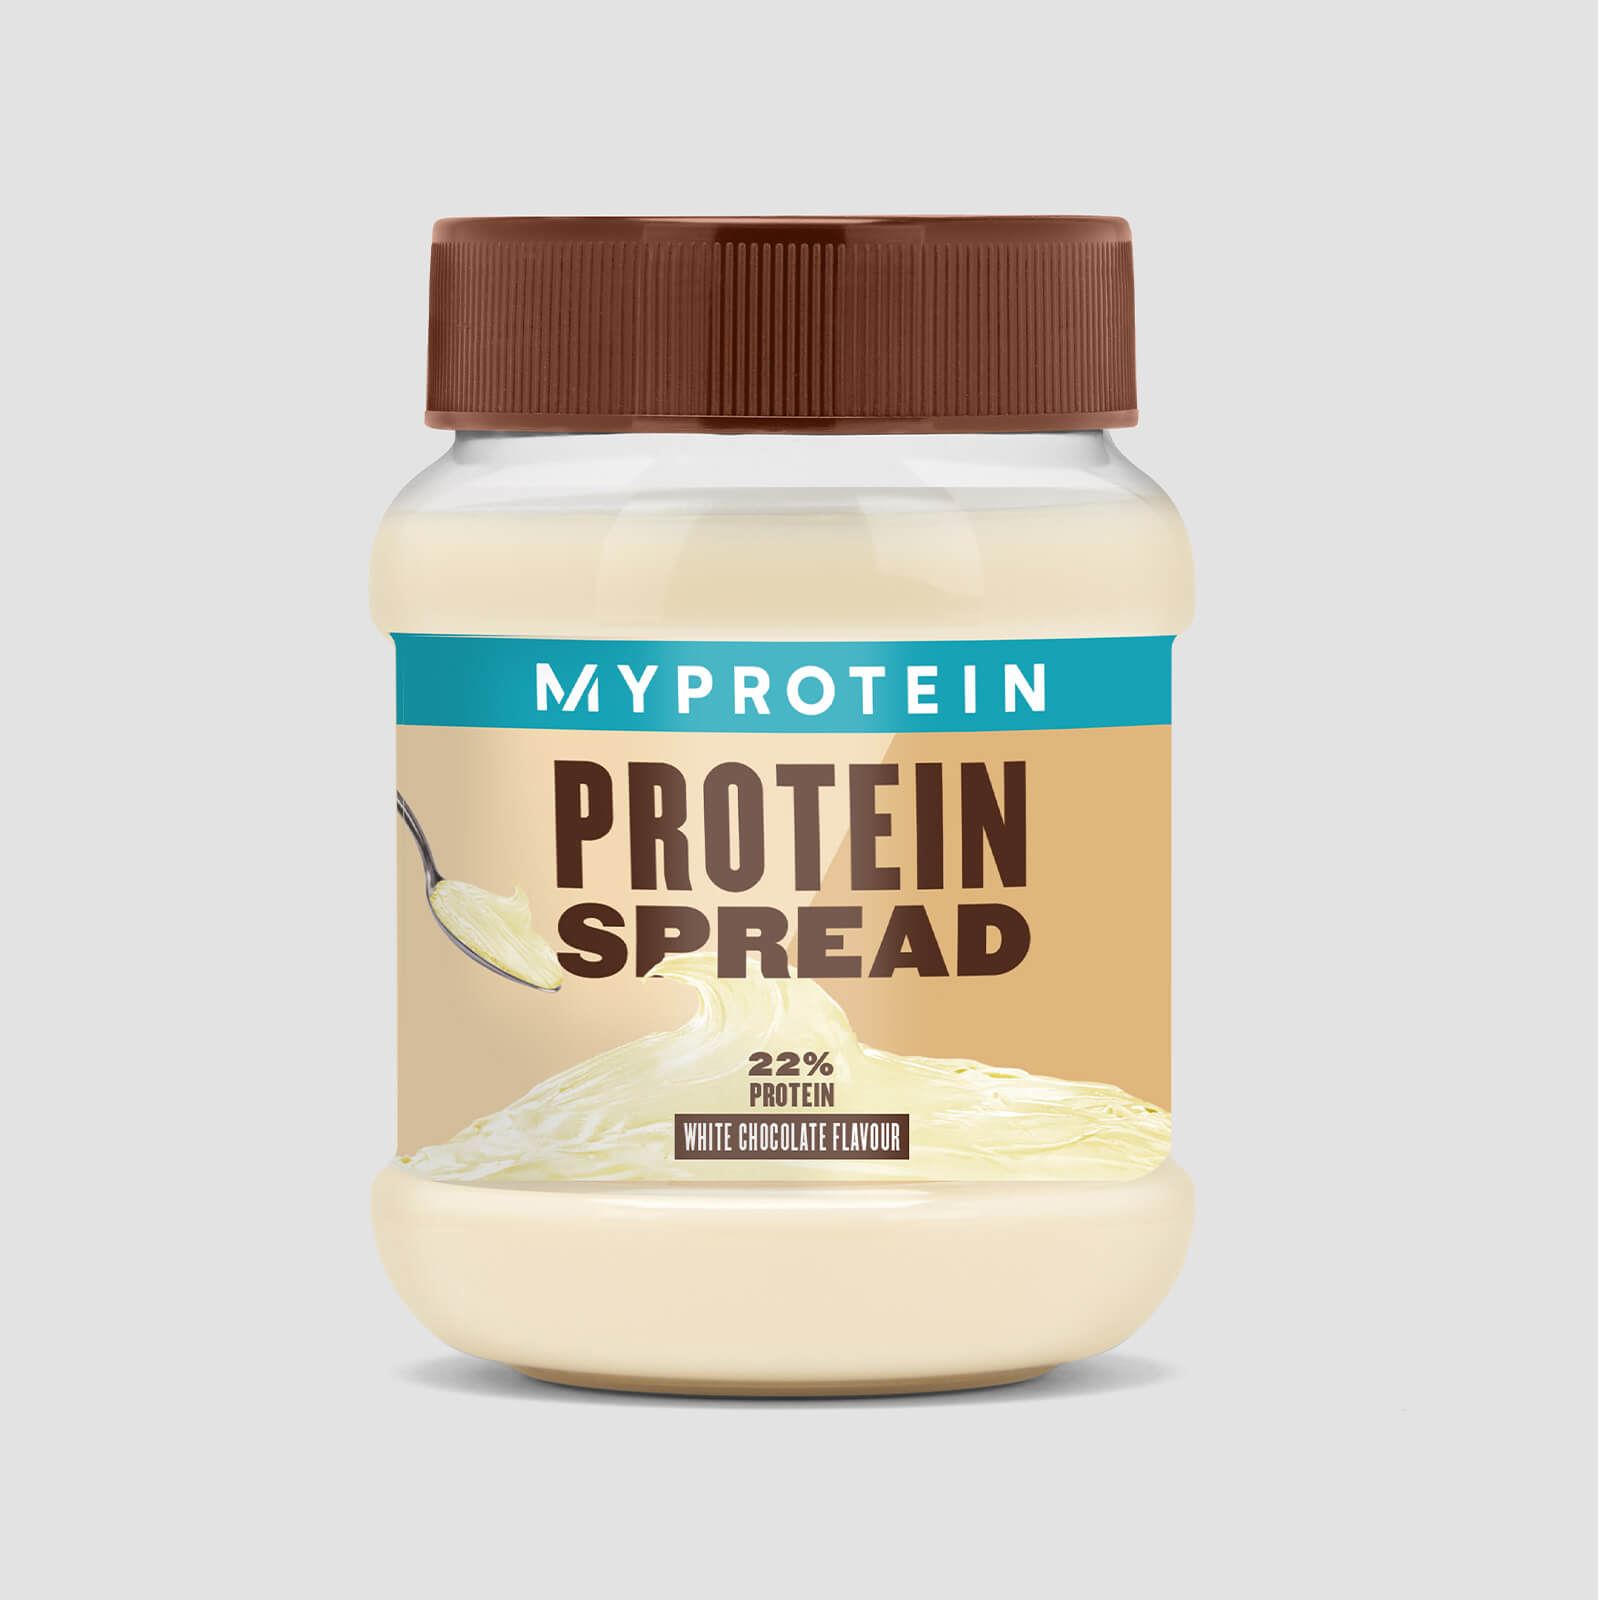 Myprotein Protein Spreads - 360g - White Chocolate